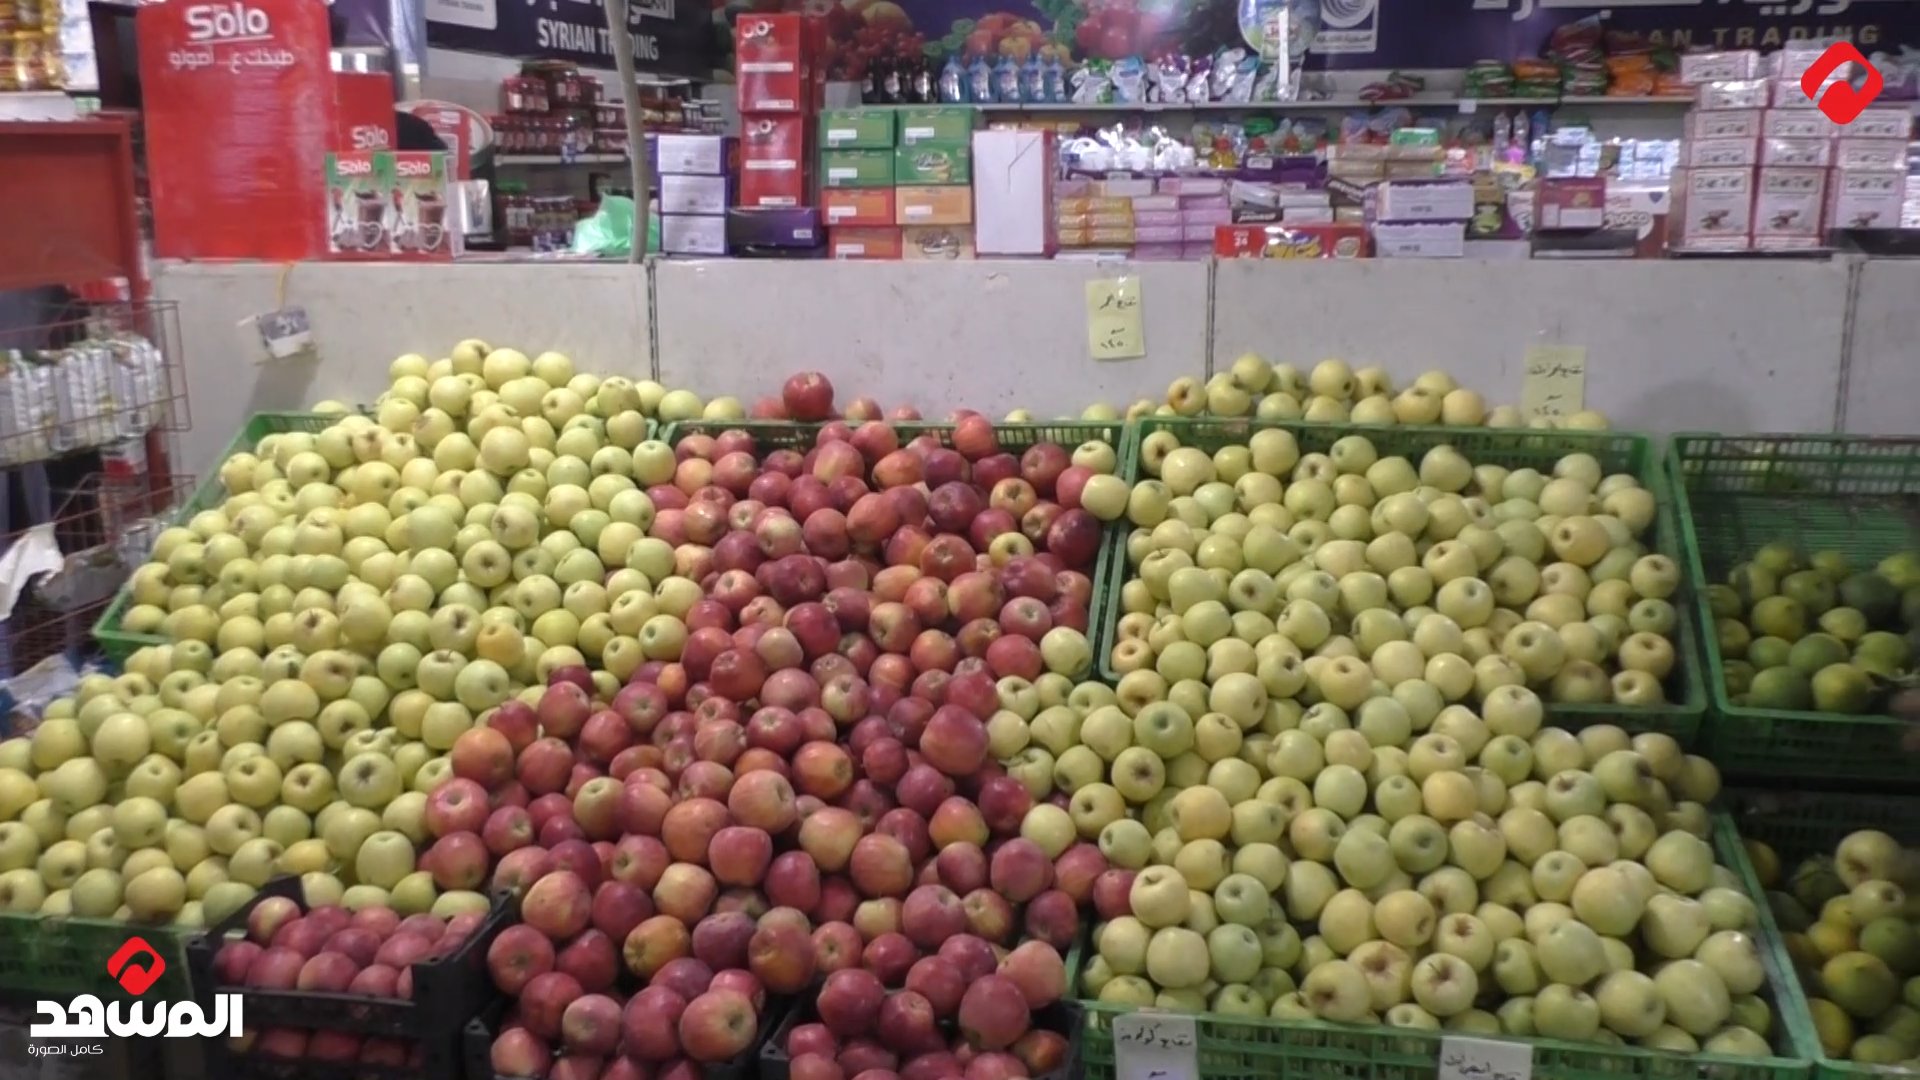 السورية للتجارة تغذي صالاتها بالخضراوات .. مواطنون: الأصناف عديدة والأسعار مشابهة للأسواق (فيديو)